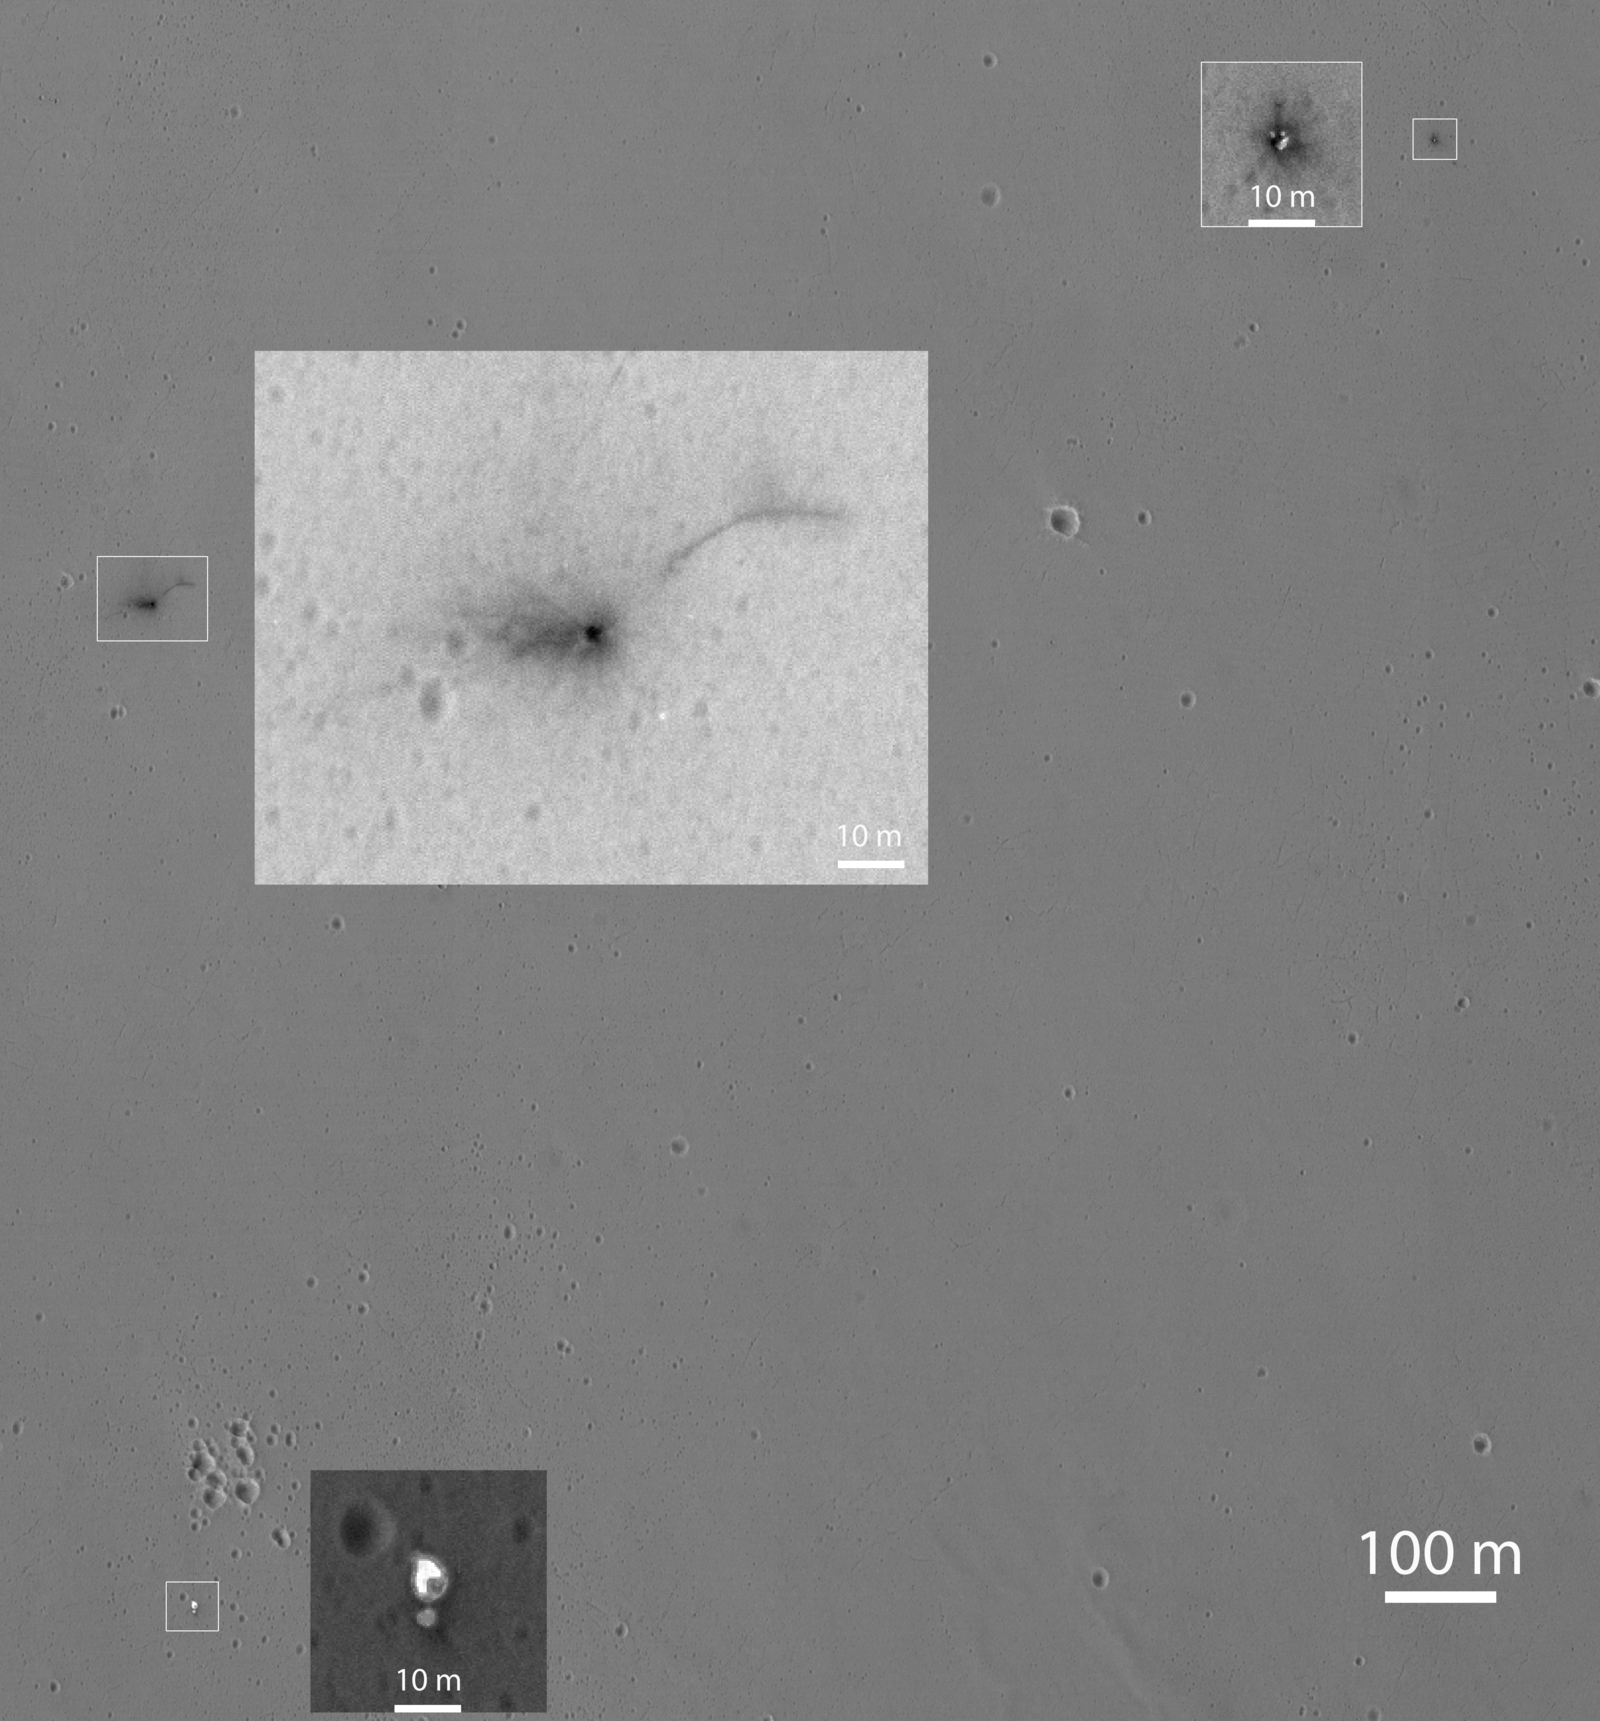 Closer Look at Schiaparelli Impact Site on Mars